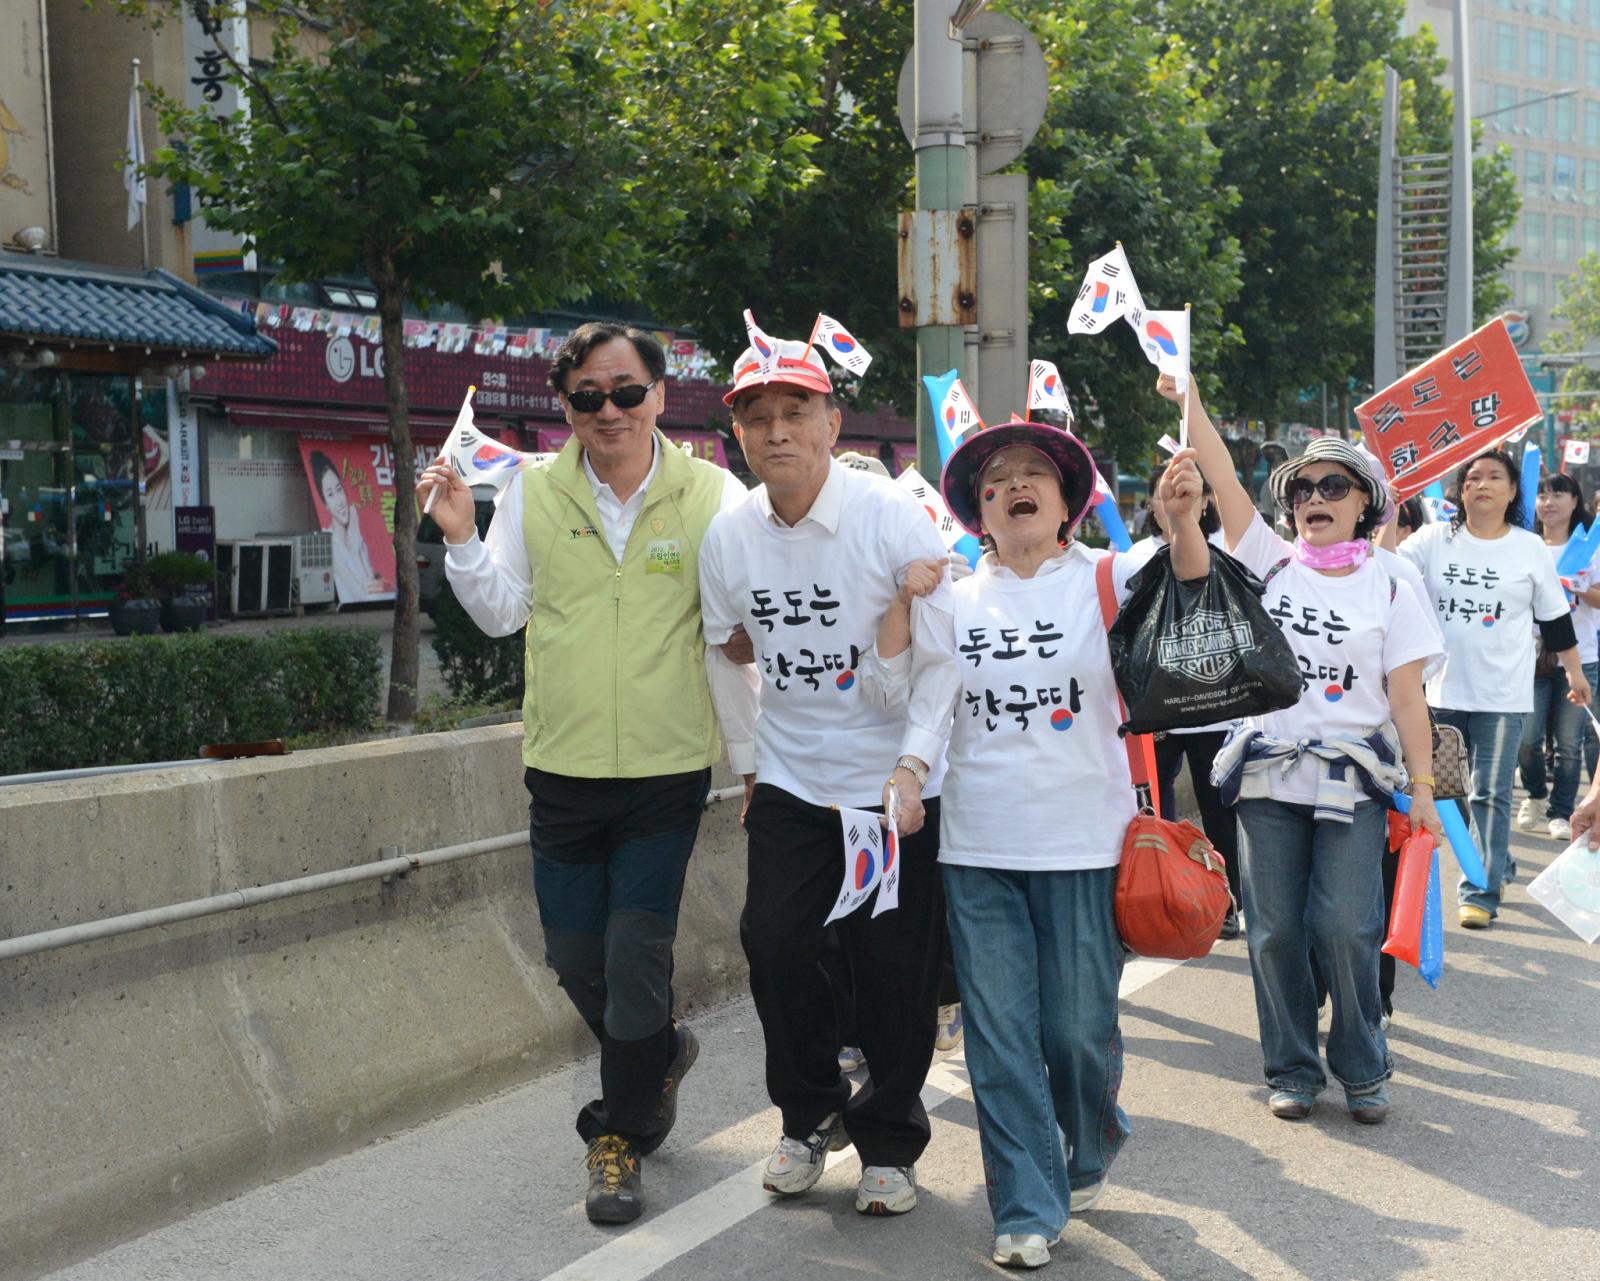 드림인연수 페스티벌 행사 퍼레이드에서 참여자와 함께 하는 고남석 연수구청장의 모습
